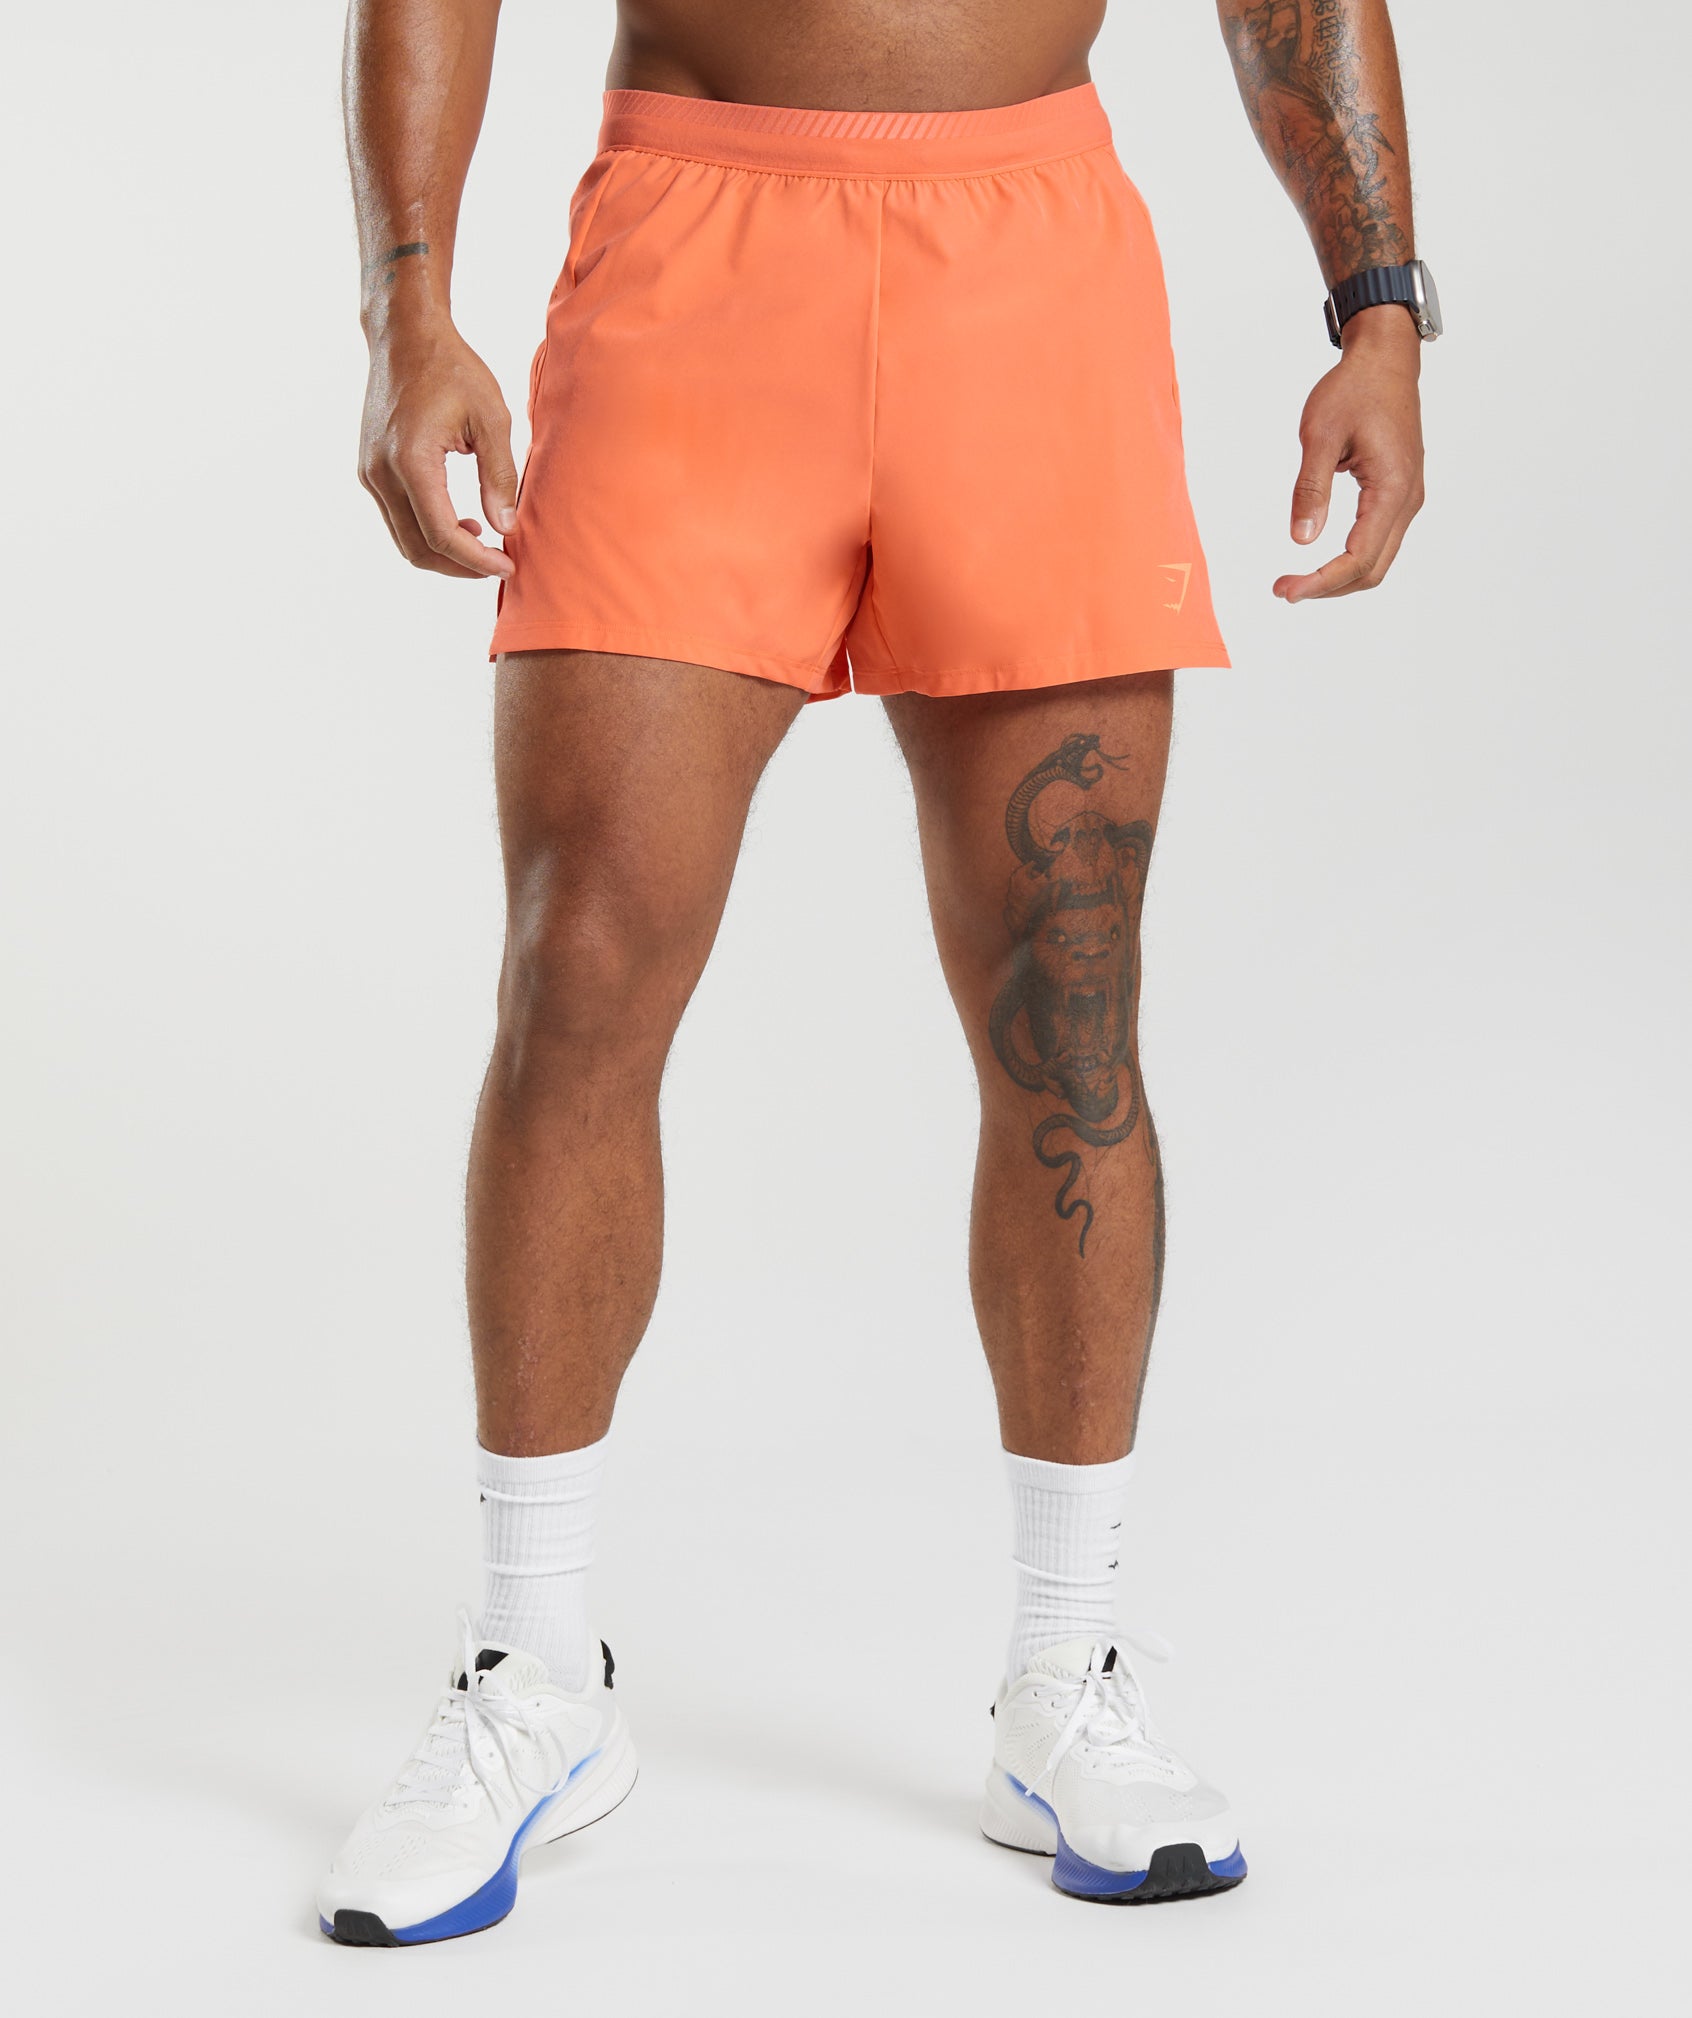 Apex Run 4" Shorts in Solstice Orange